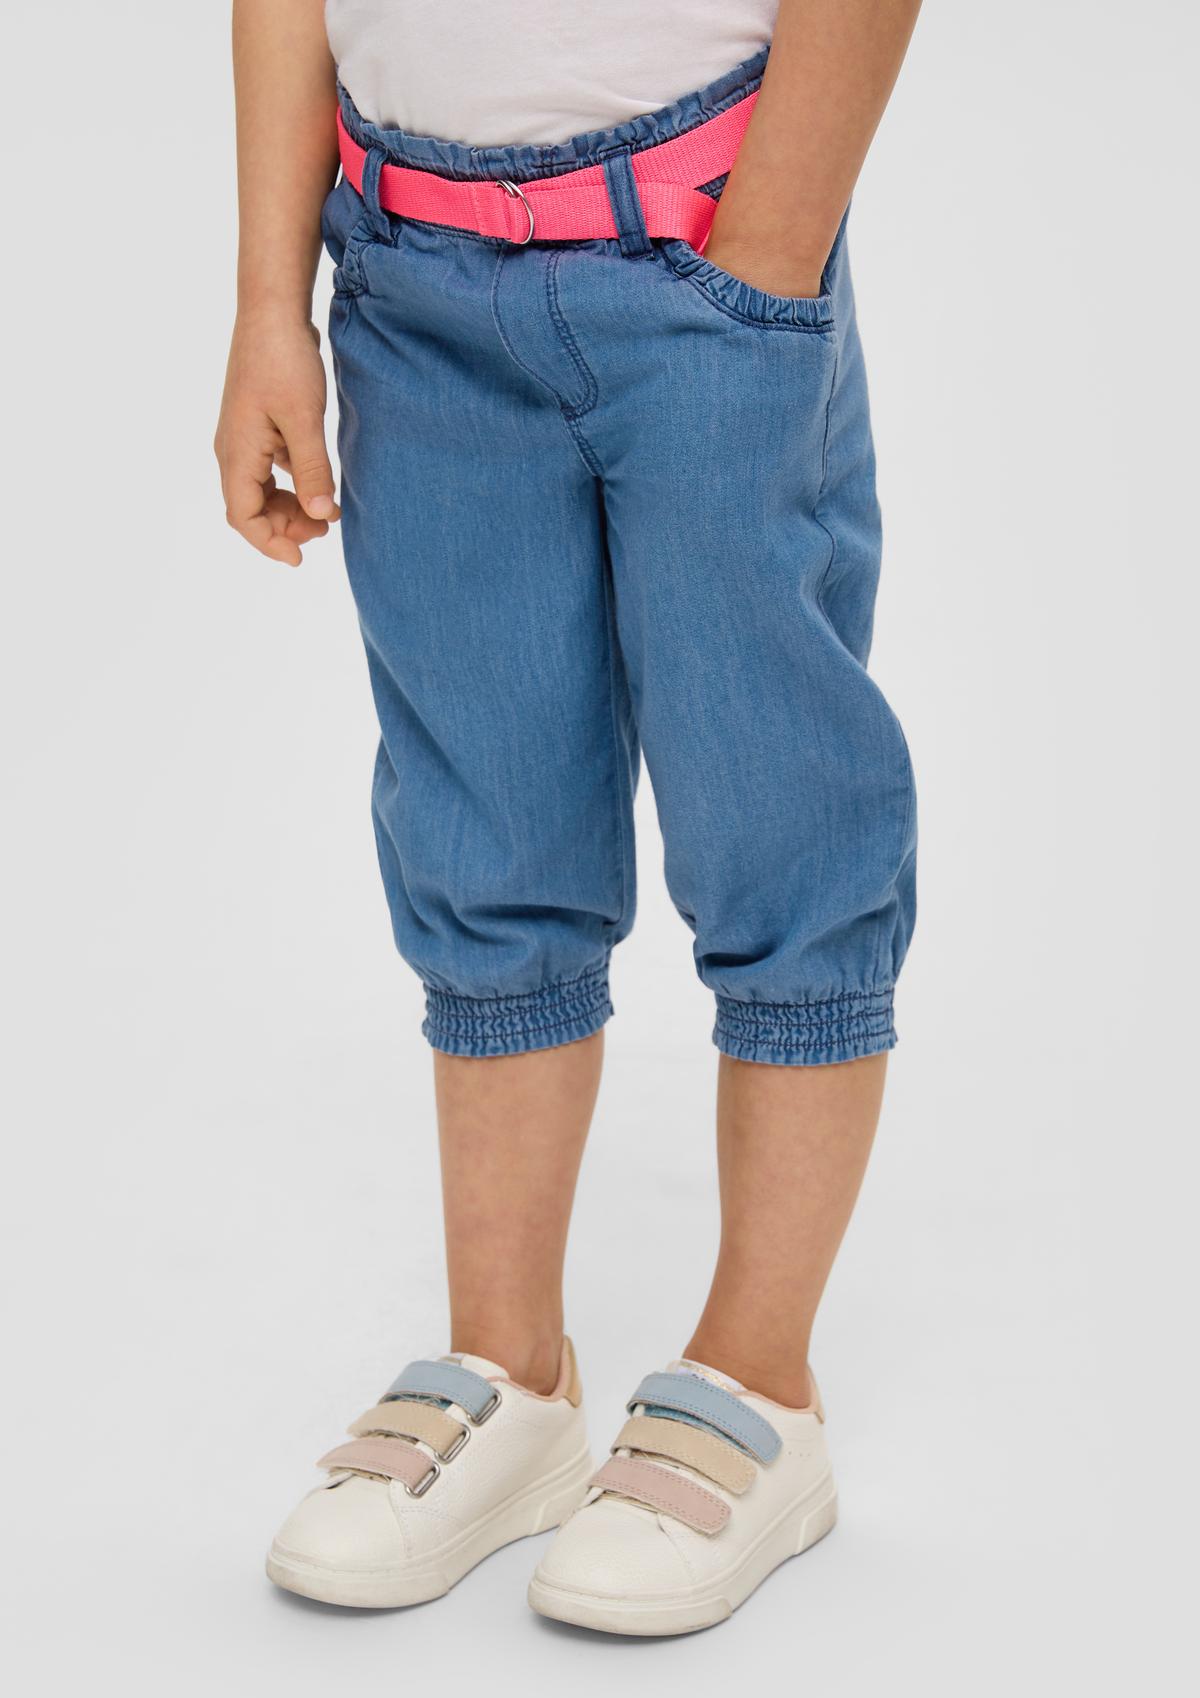 Jeans dolžine do gležnjev / kroj Relaxed Fit / High Rise / široke hlačnice